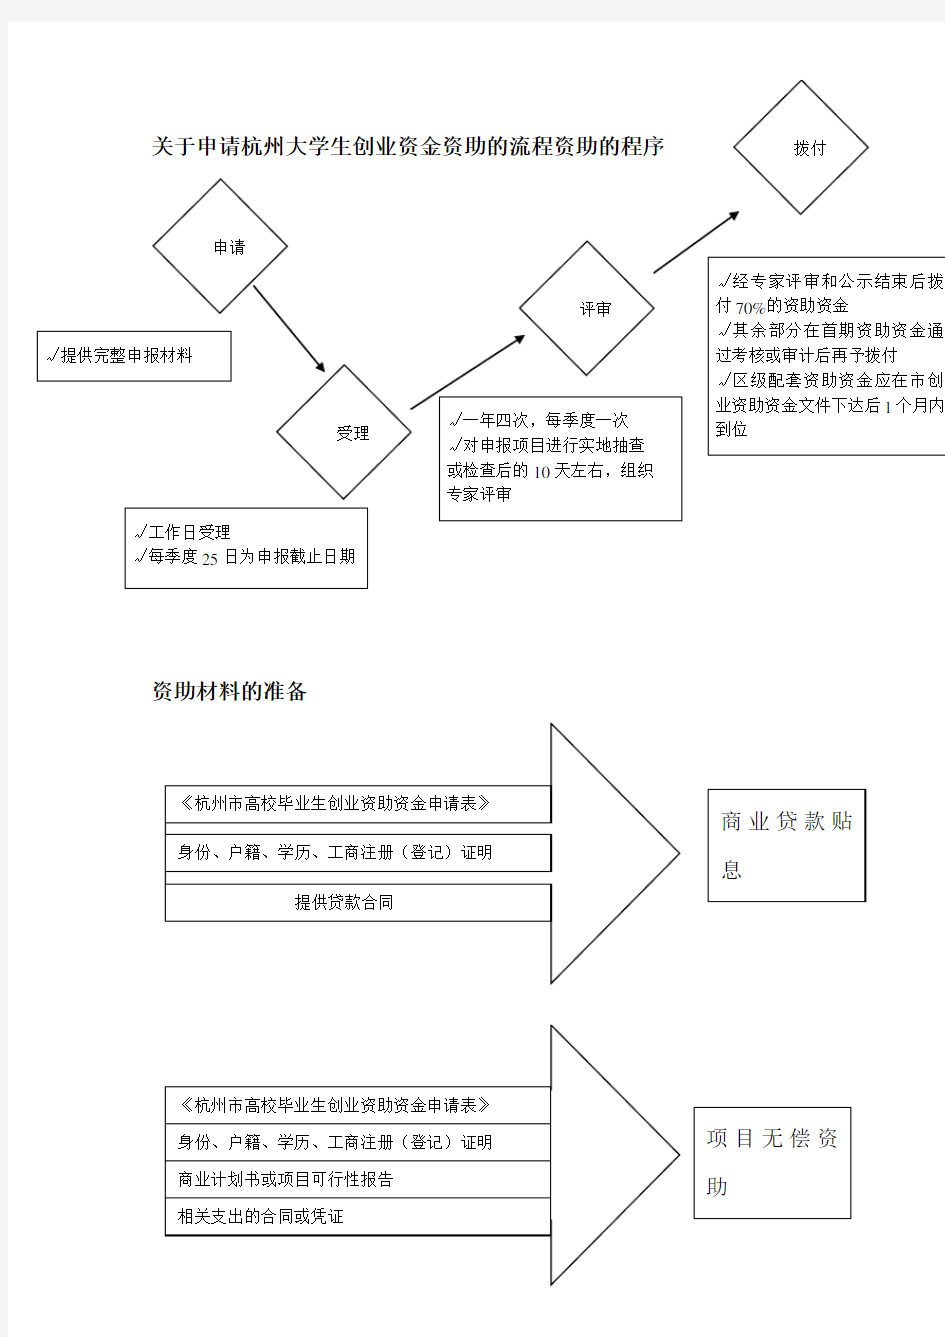 关于申请杭州大学生创业各项政策申请流程